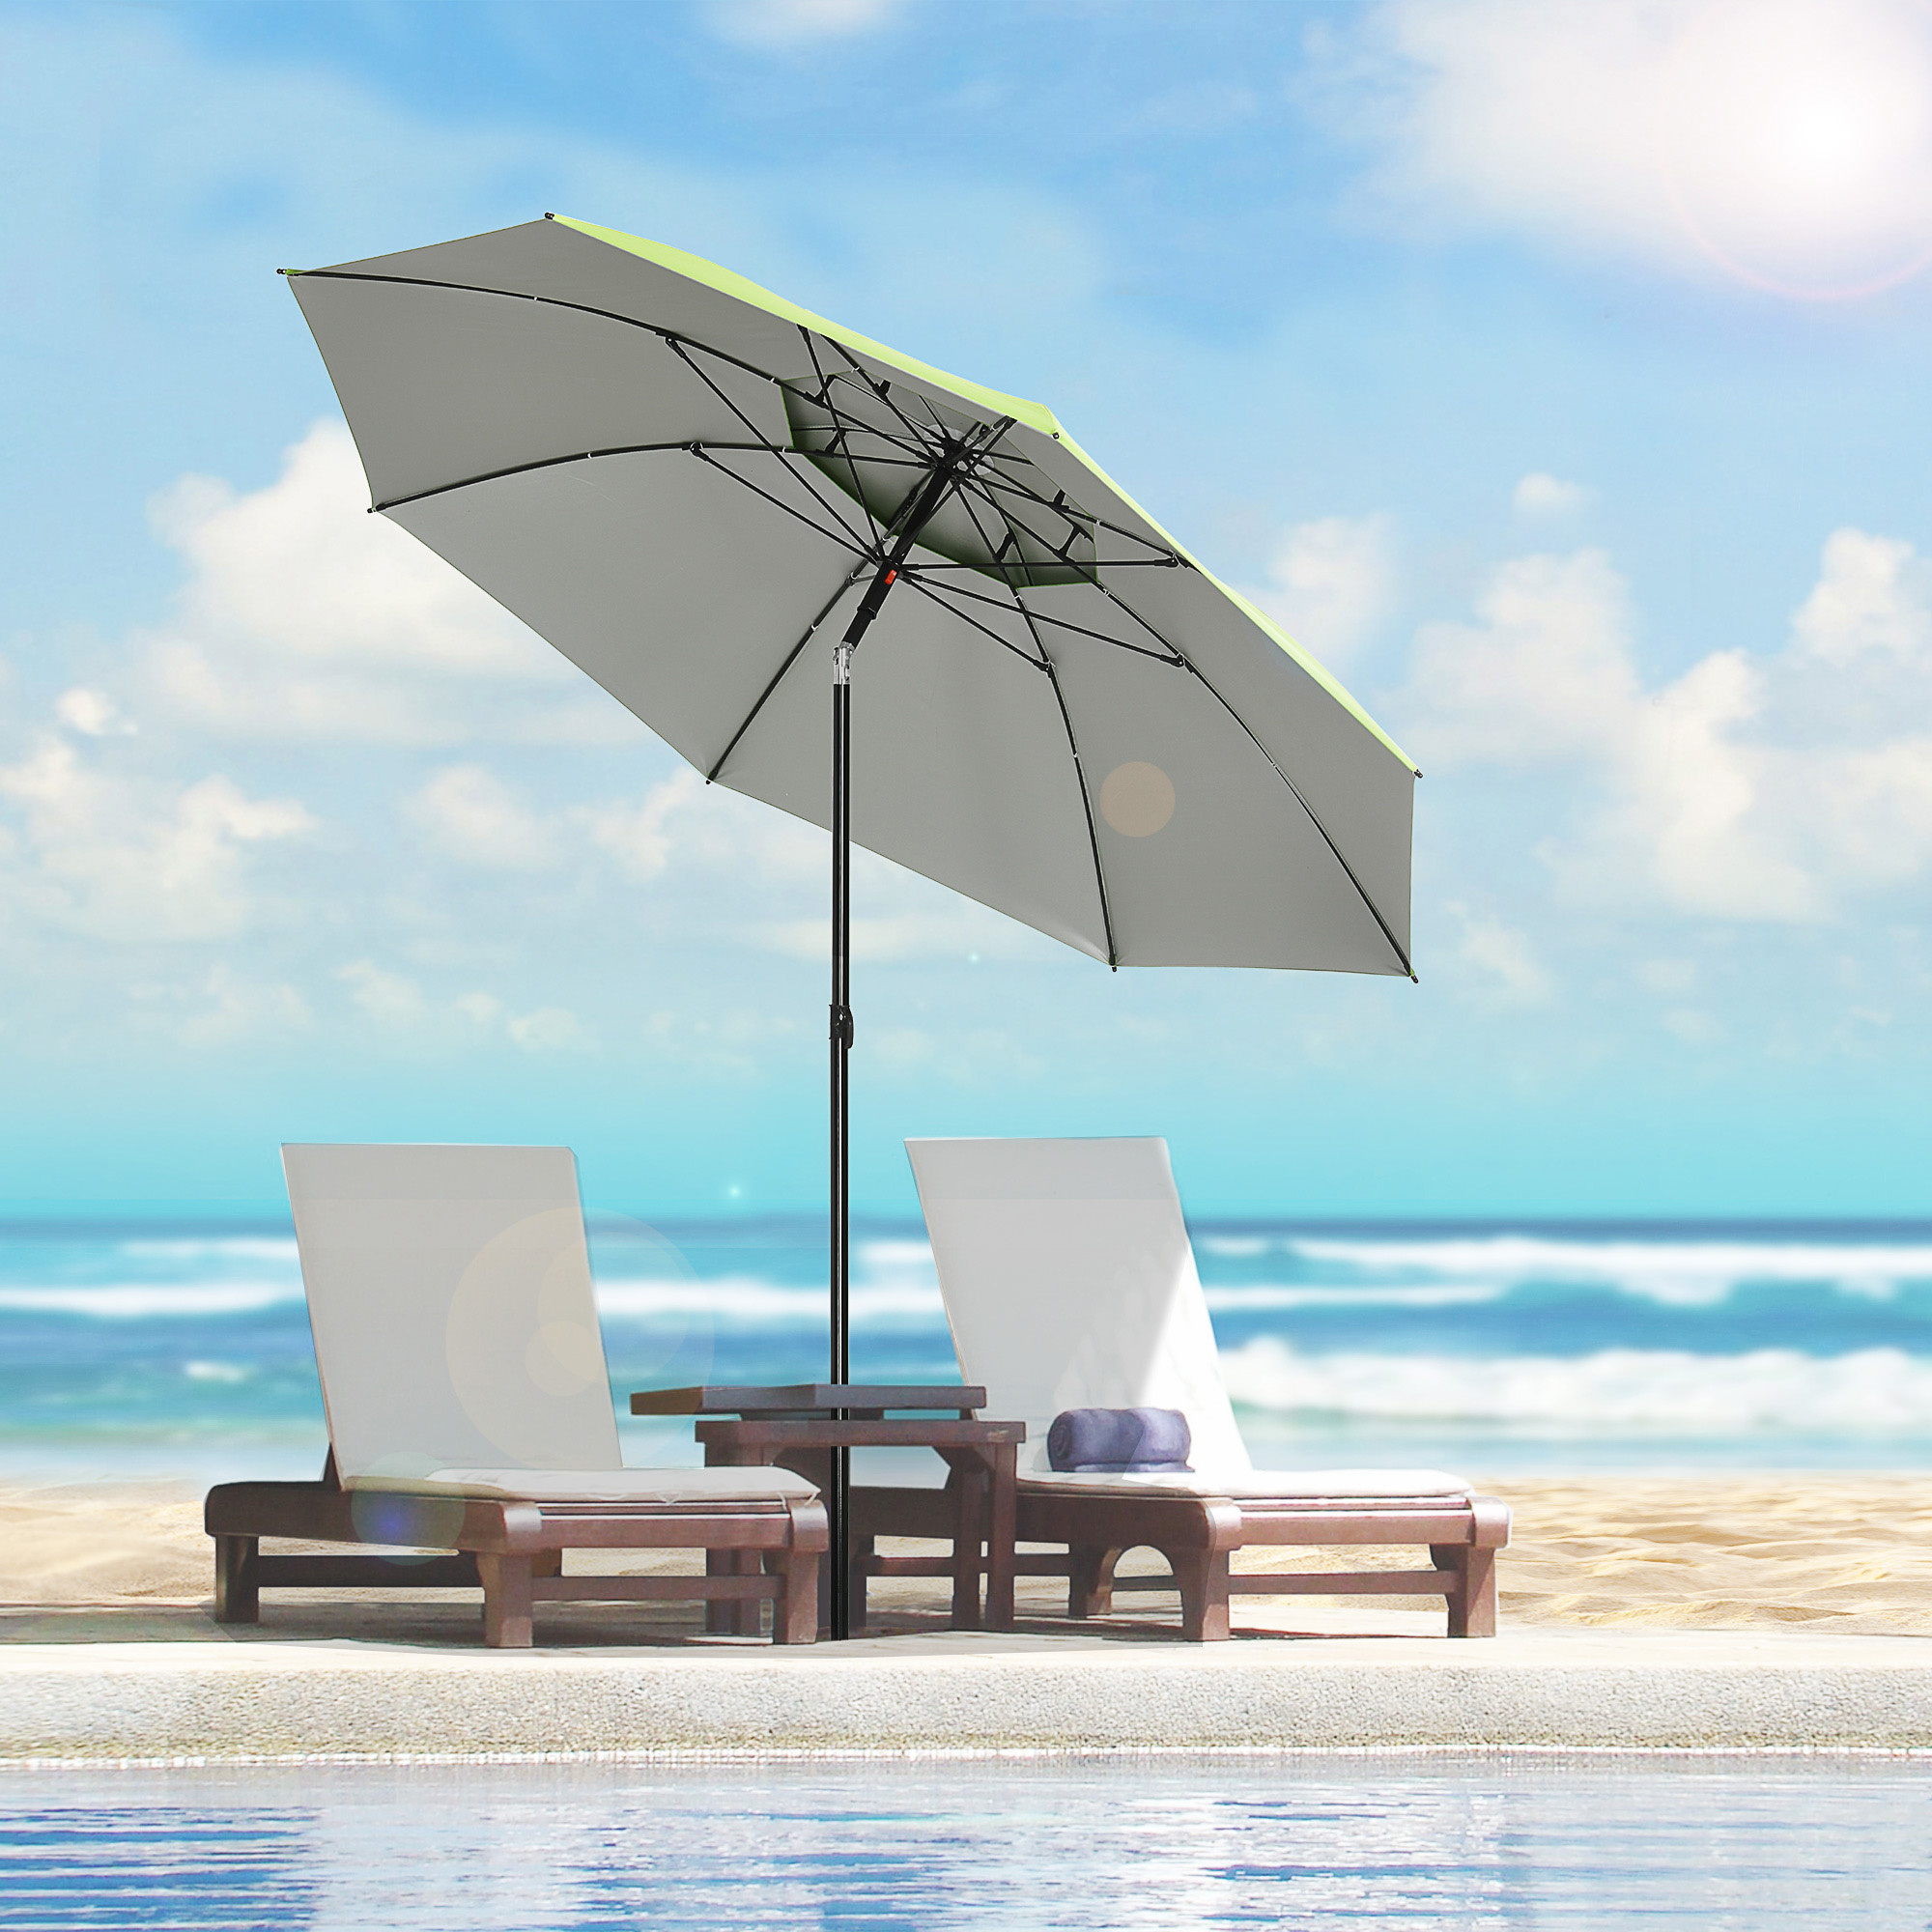 Sunny Groene strandparasol, parasol met ventilatieopeningen en beschermhoes, ? 1,85